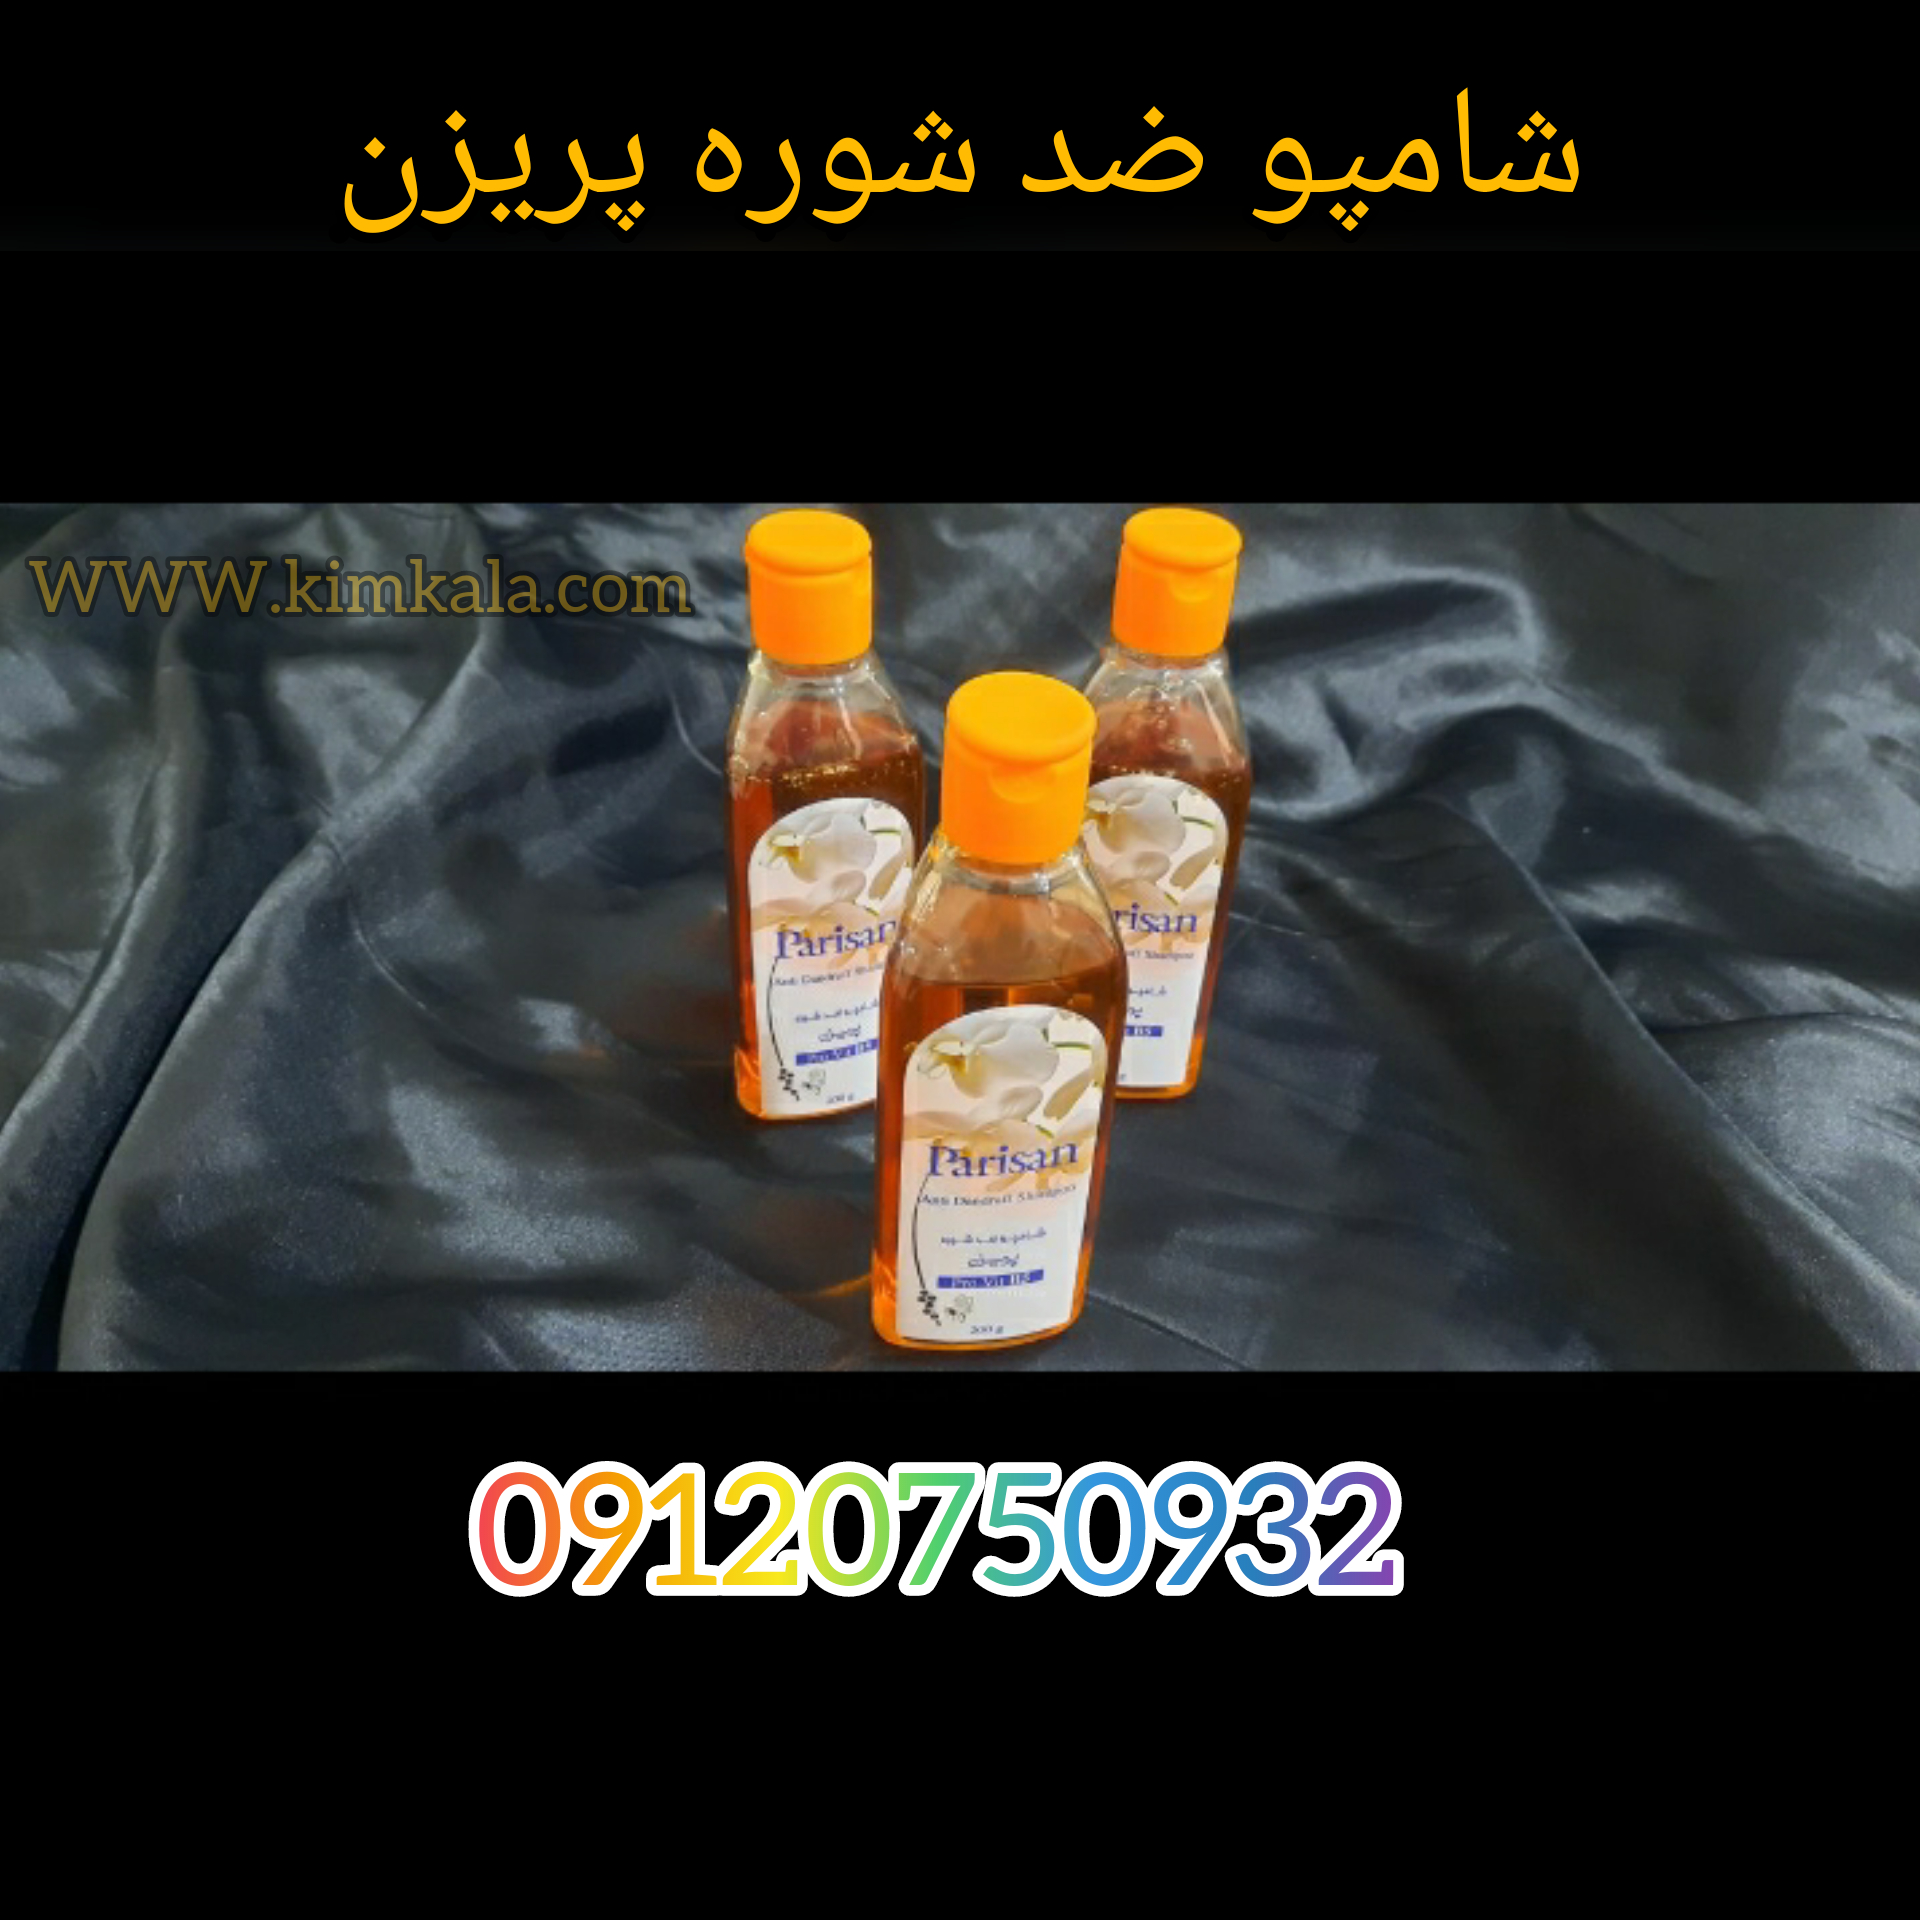 شامپو ویتامینه ضد شوره پریزن/09120750932/ ترکیبات شامپو  ضد شوره پریزن 